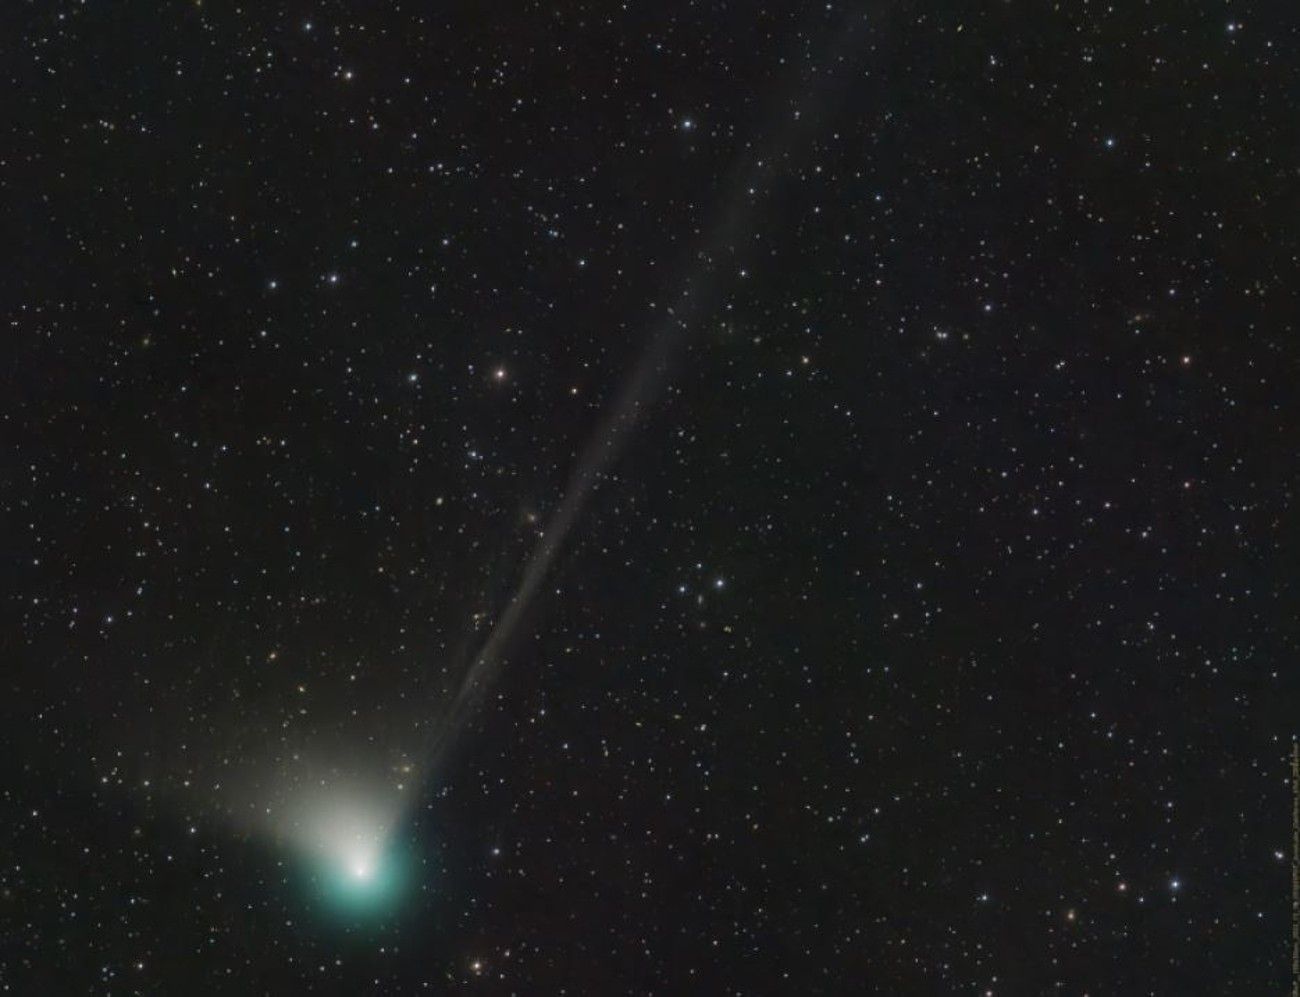 Un nuevo cometa podrá vislumbrarse en los cielos nocturnos de finales de enero